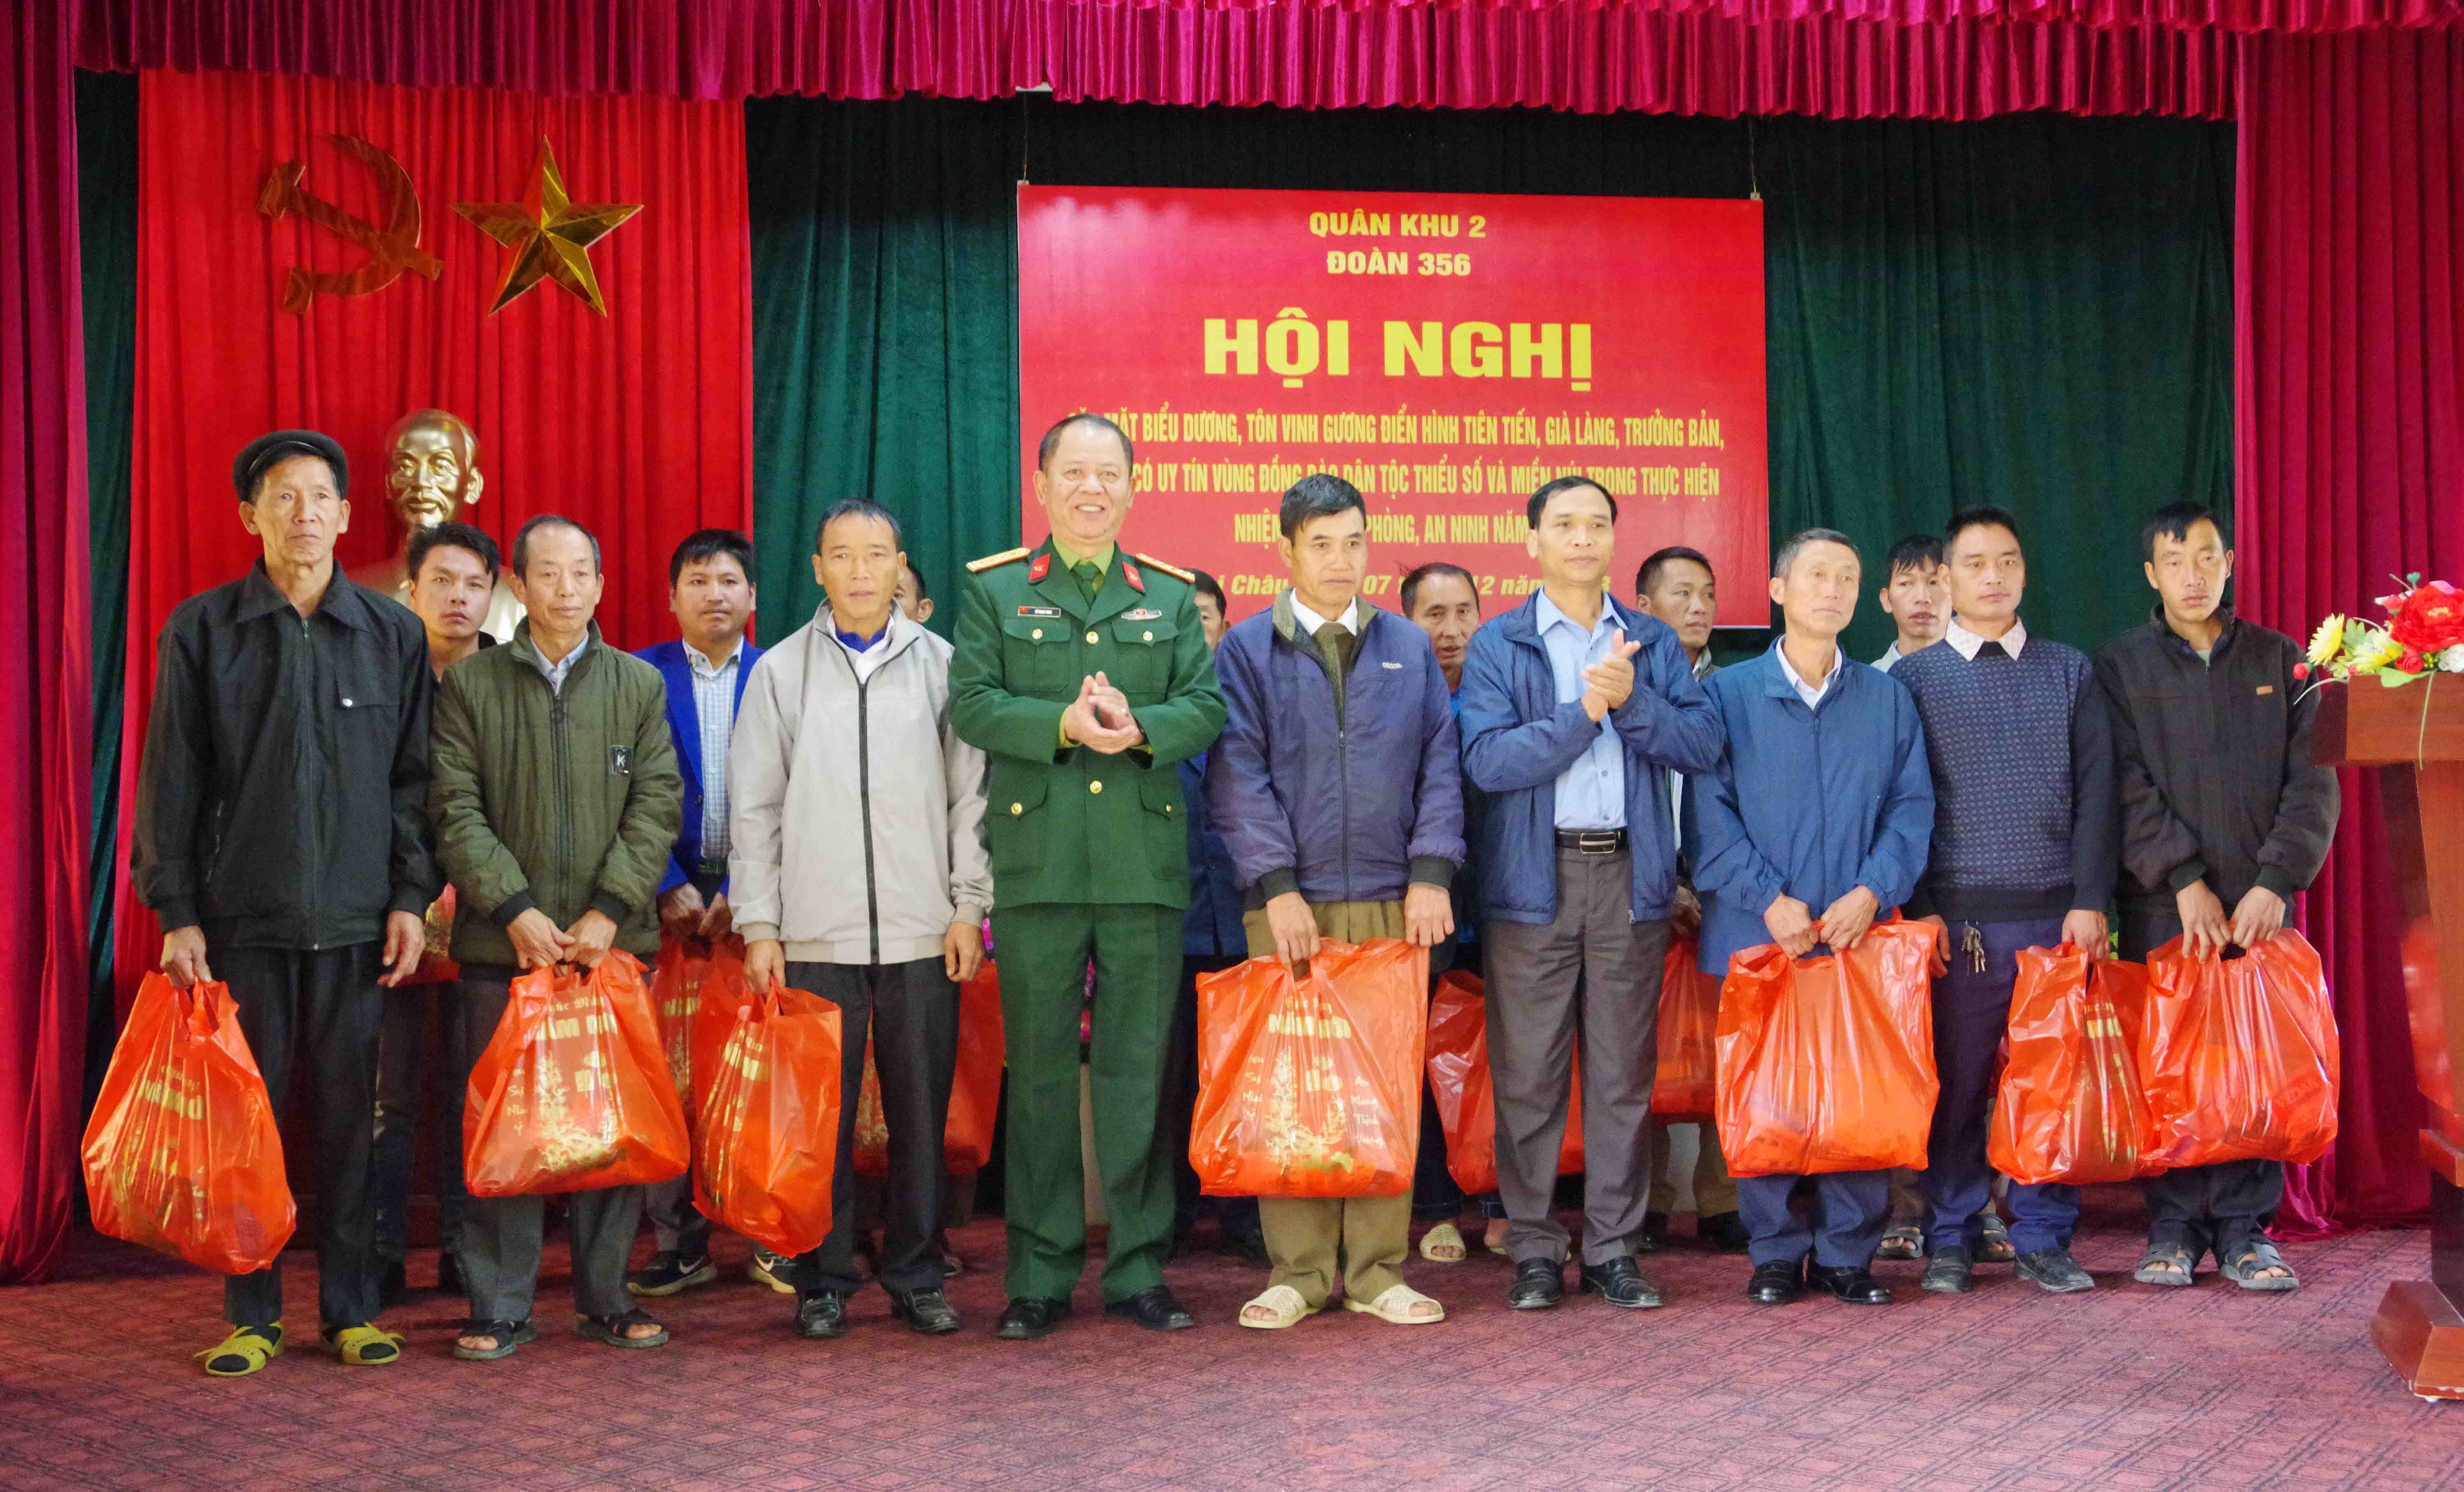 Lãnh đạo huyện Phong Thổ cùng Chỉ huy Đoàn KTQP 356 trao tặng quà cho các già làng, trưởng bản, người có uy tín tiêu biểu.  